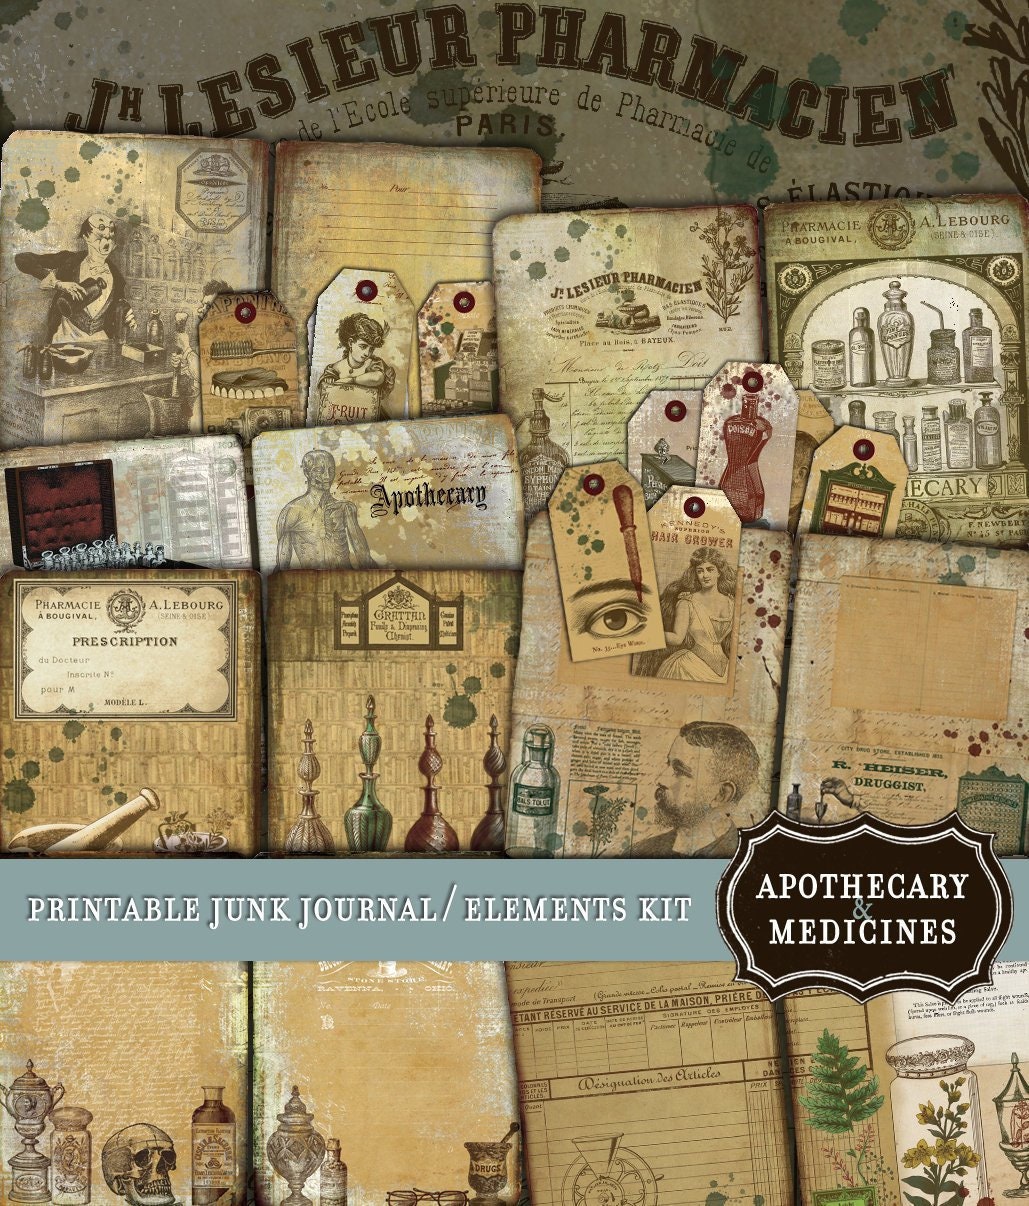 Antique Apothecary, Journal Kit, Printable Journal, Apothecary